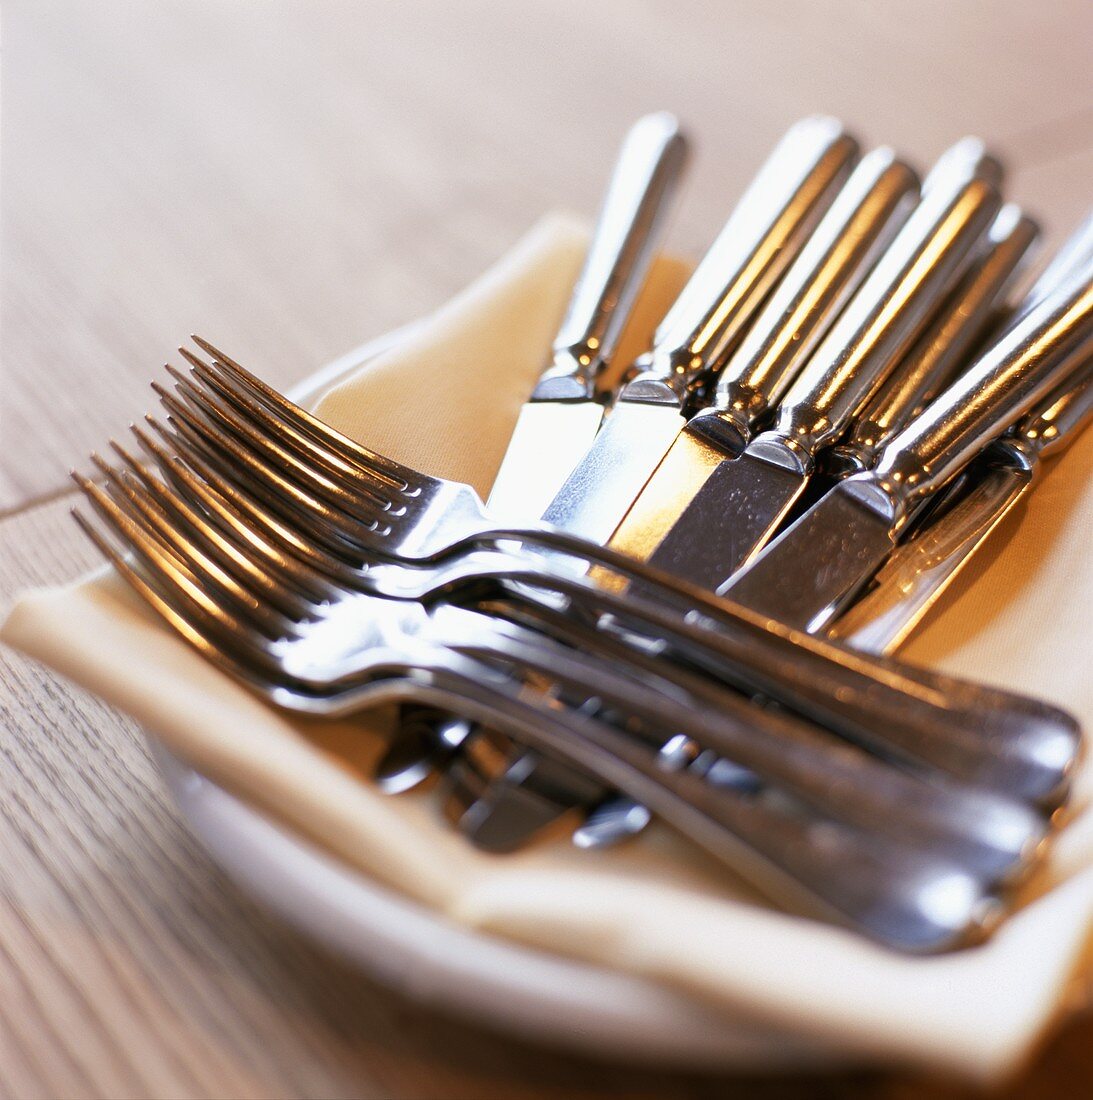 Messer und Gabeln auf einem Teller mit Stoffserviette